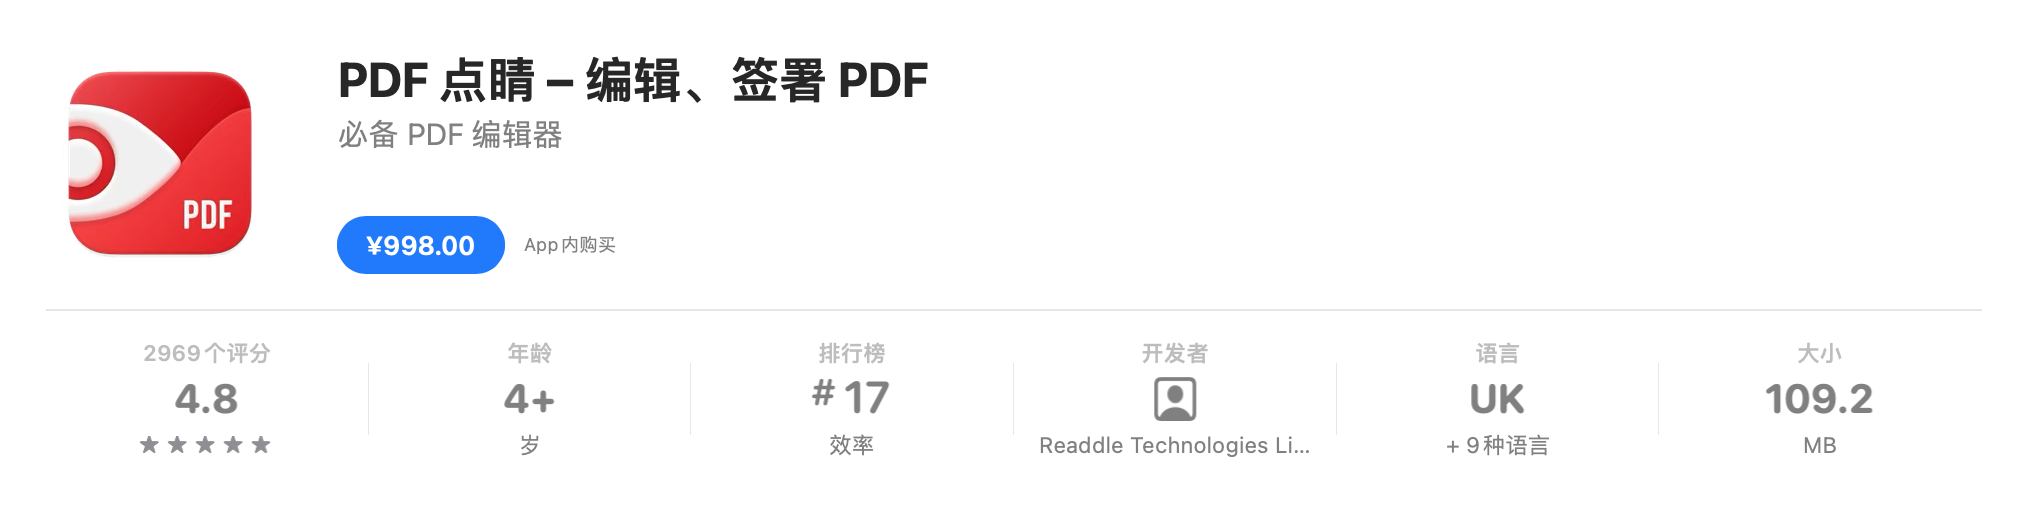 👍 好用的PDF阅读编辑器 – 点晴PDF Expert v3.1.0 极致的 PDF 阅读标注工作体验 crack